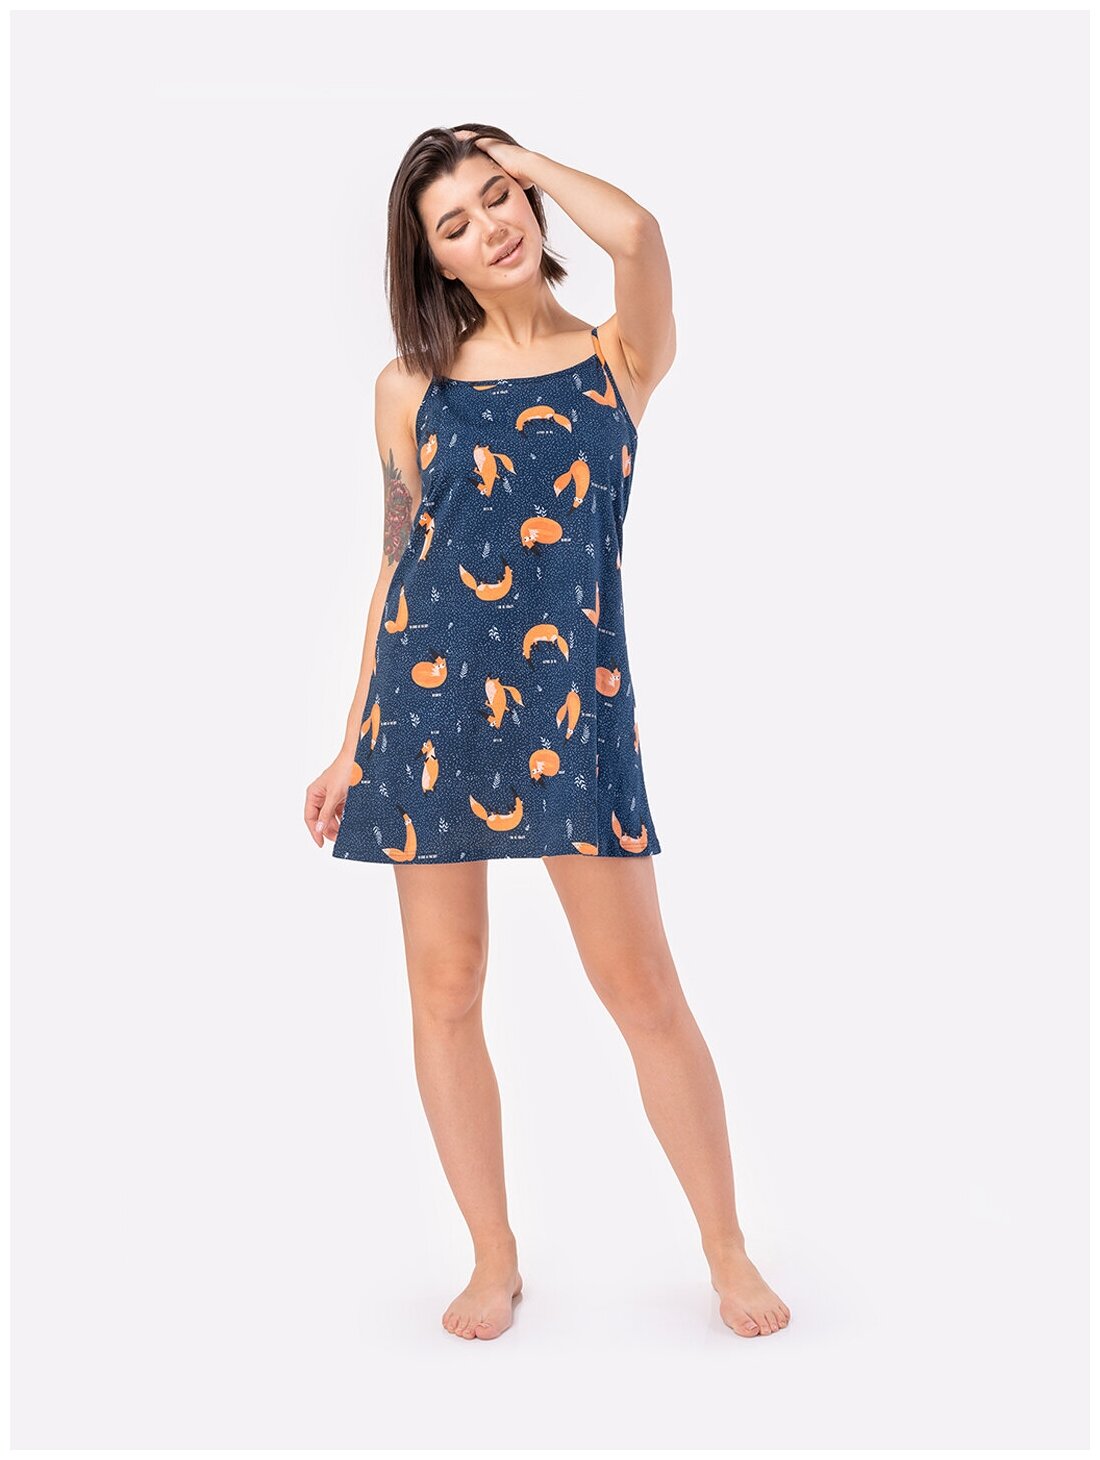 Сорочка женская HappyFox, HF3000MSP размер 52, цвет лисы,т.синий - фотография № 4